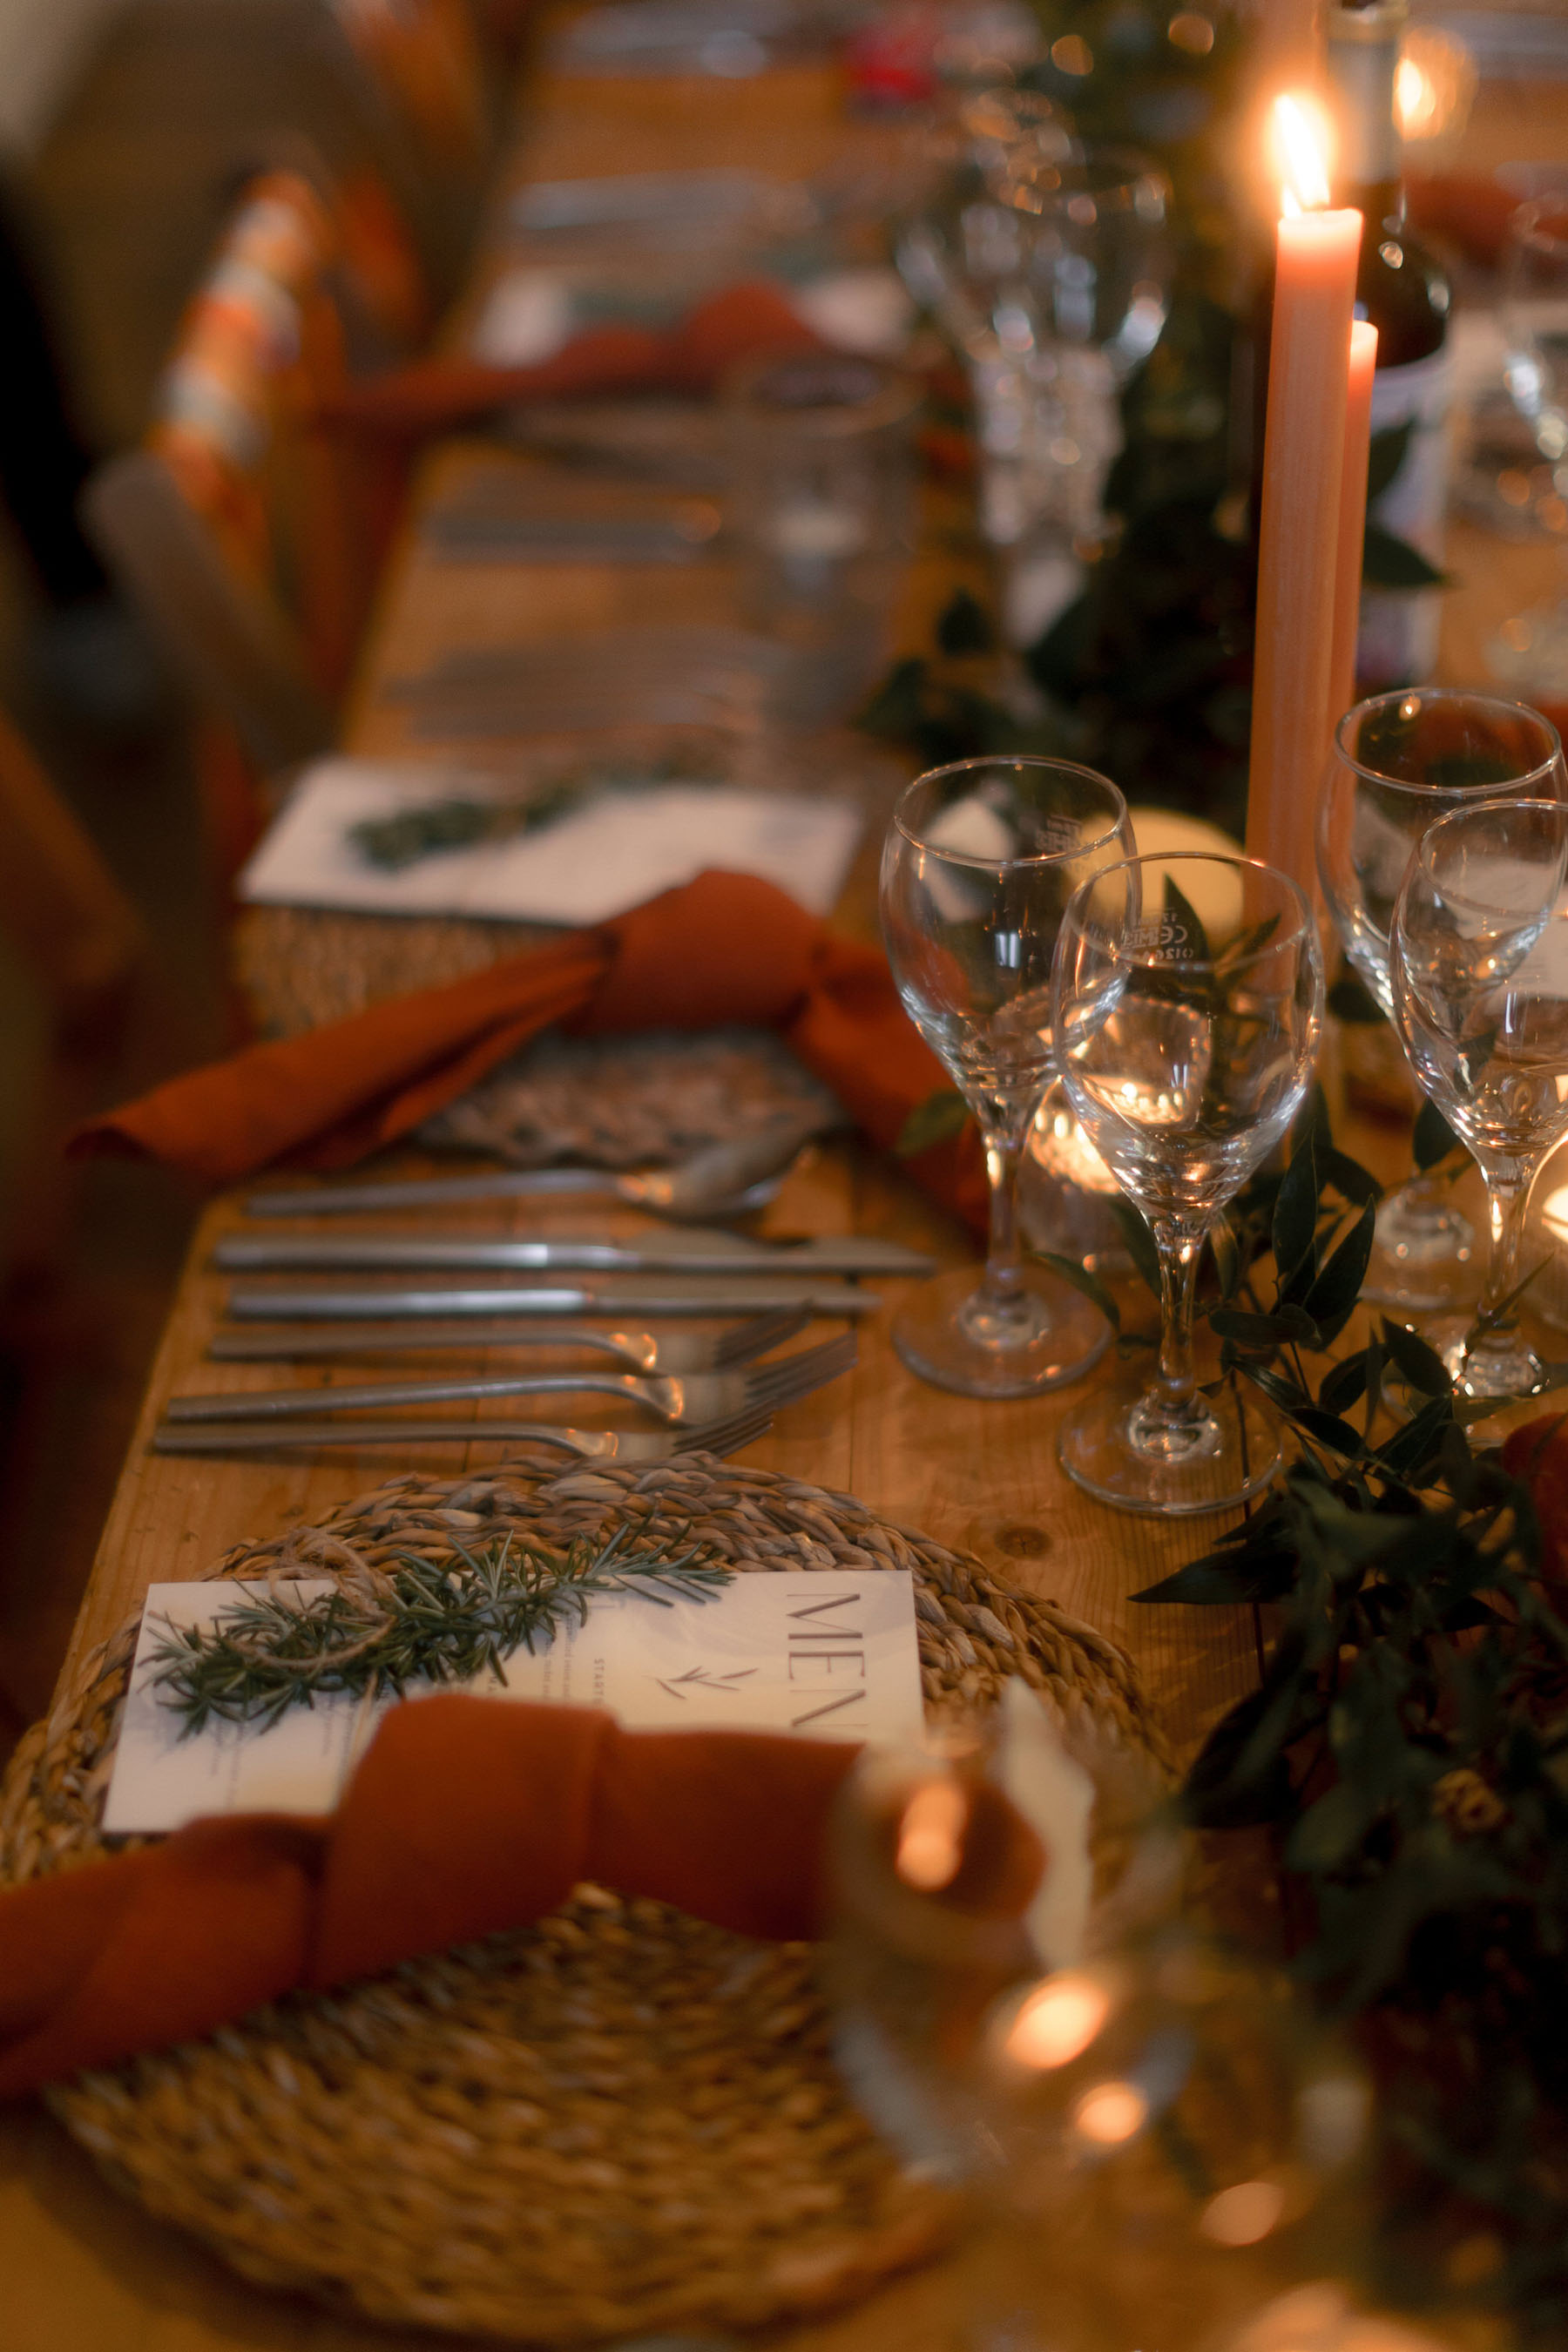 Orange napkins - wedding table setting.